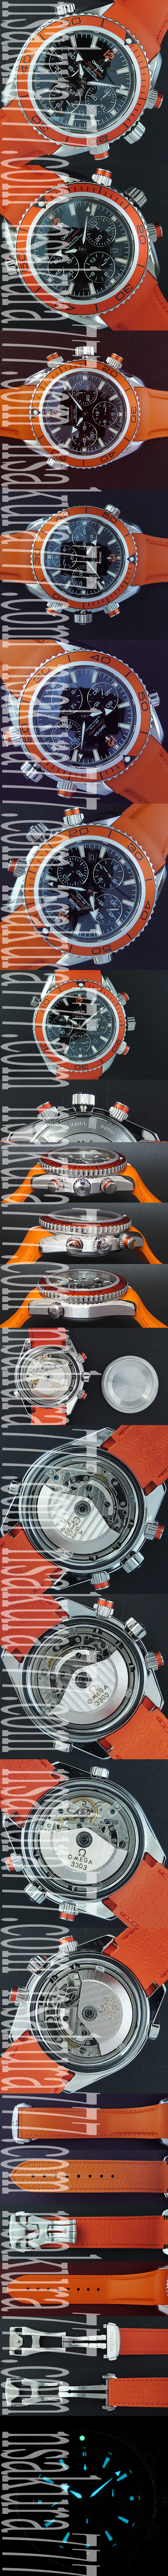 スーパーコピー時計オメガ シーマスター プラネット オーシャン Asian 7750搭載 28800振動 - ウインドウを閉じる